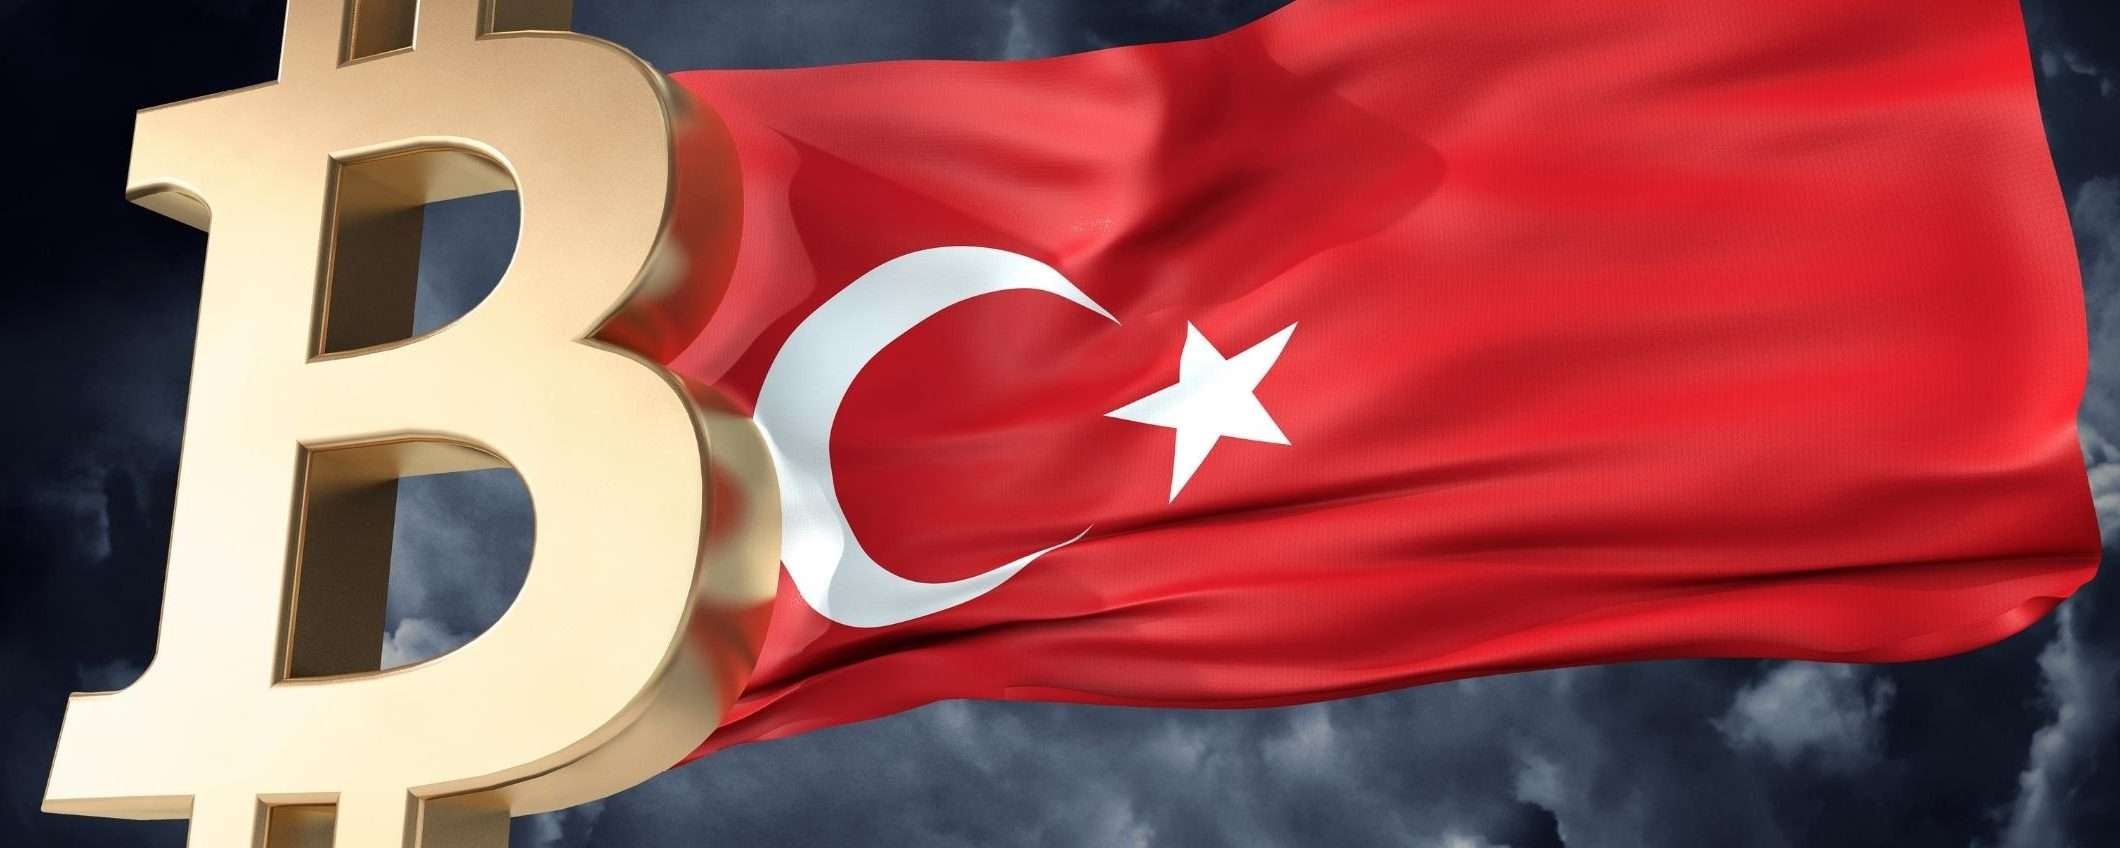 Bitcoin potrebbe essere una soluzione contro l'inflazione turca